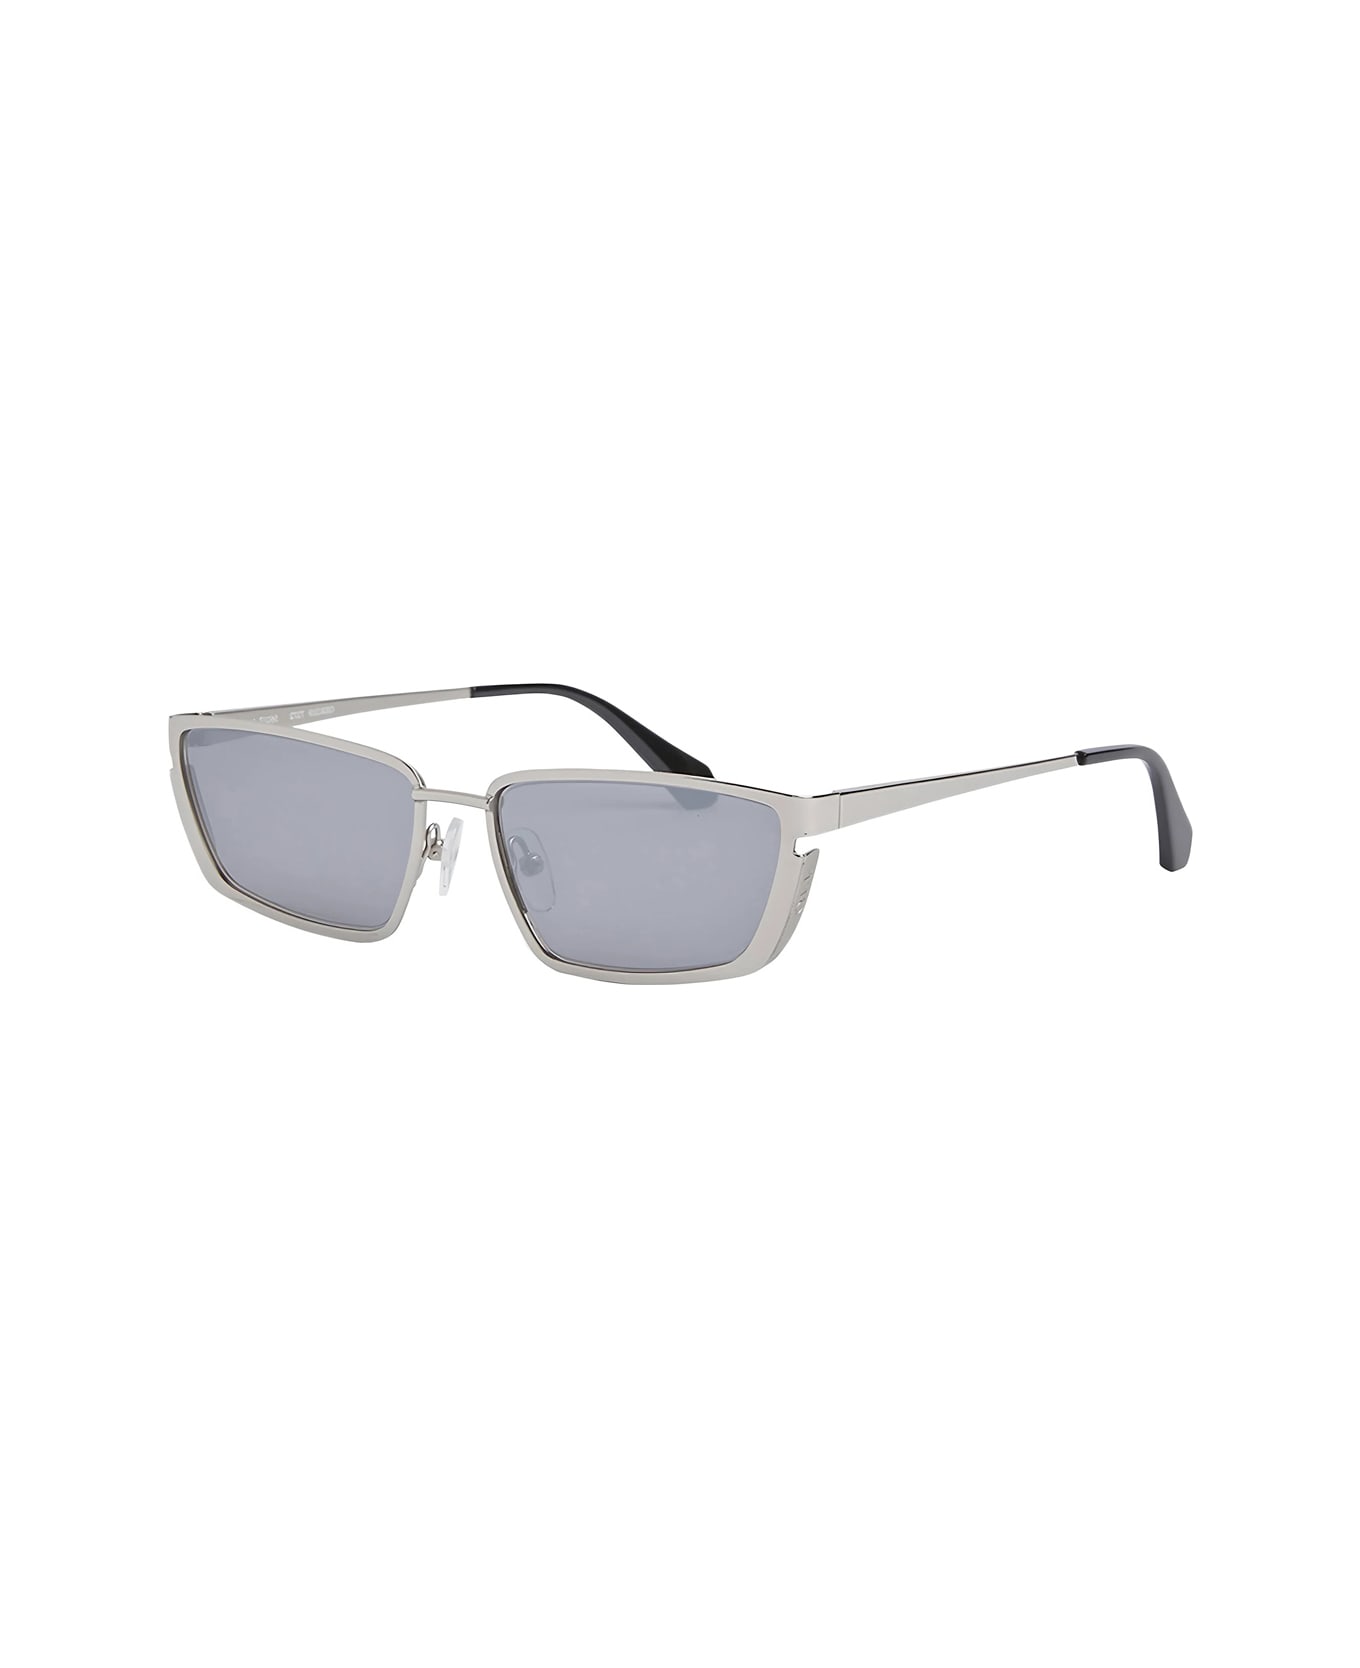 Off-White Oeri119 Richfield 7272 Silver Silver Sunglasses - Argento サングラス